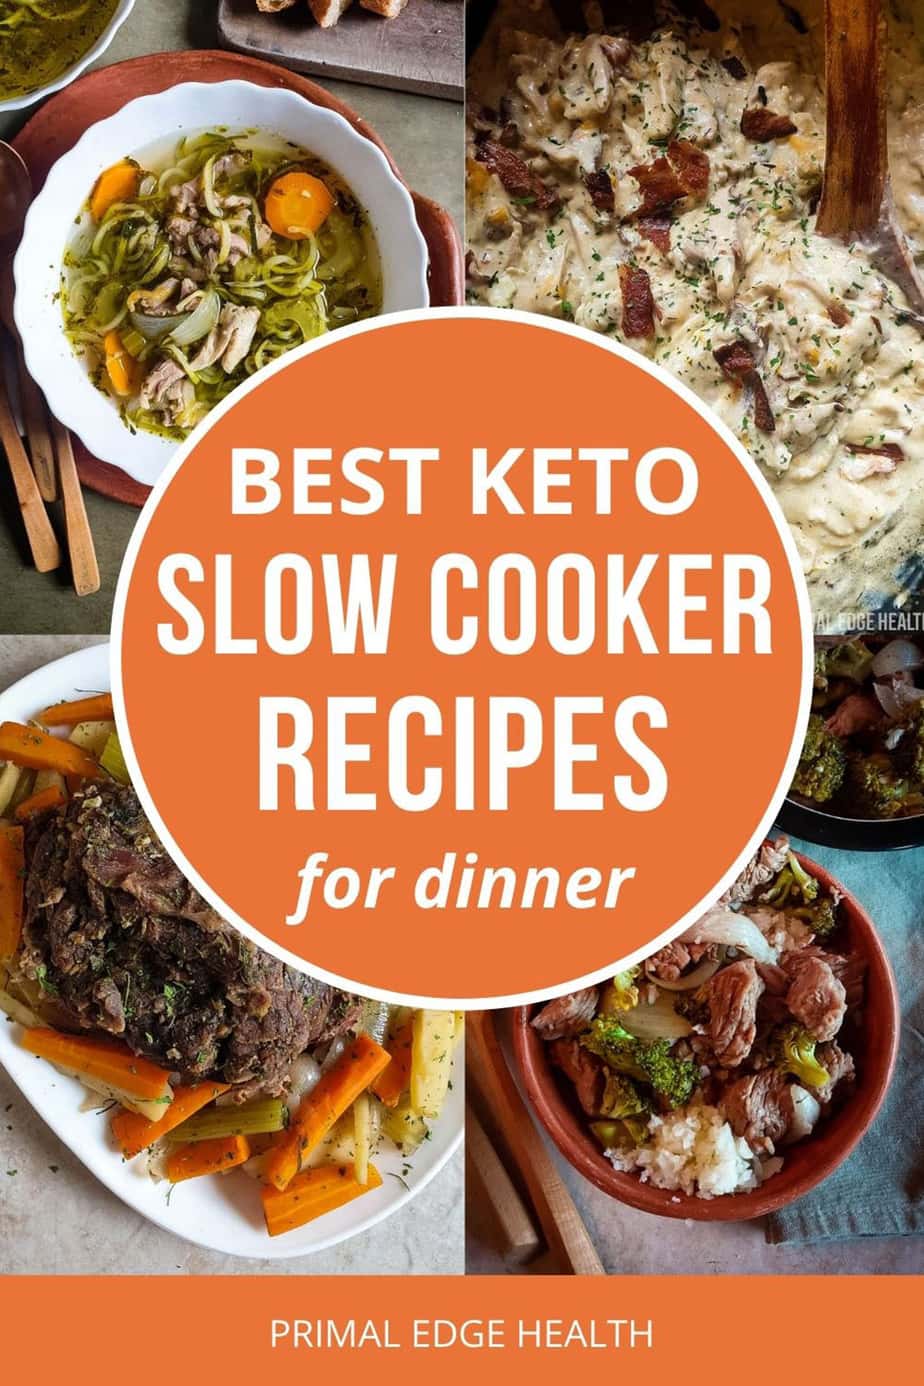 Best Keto Slow Cooker Recipes for Dinner